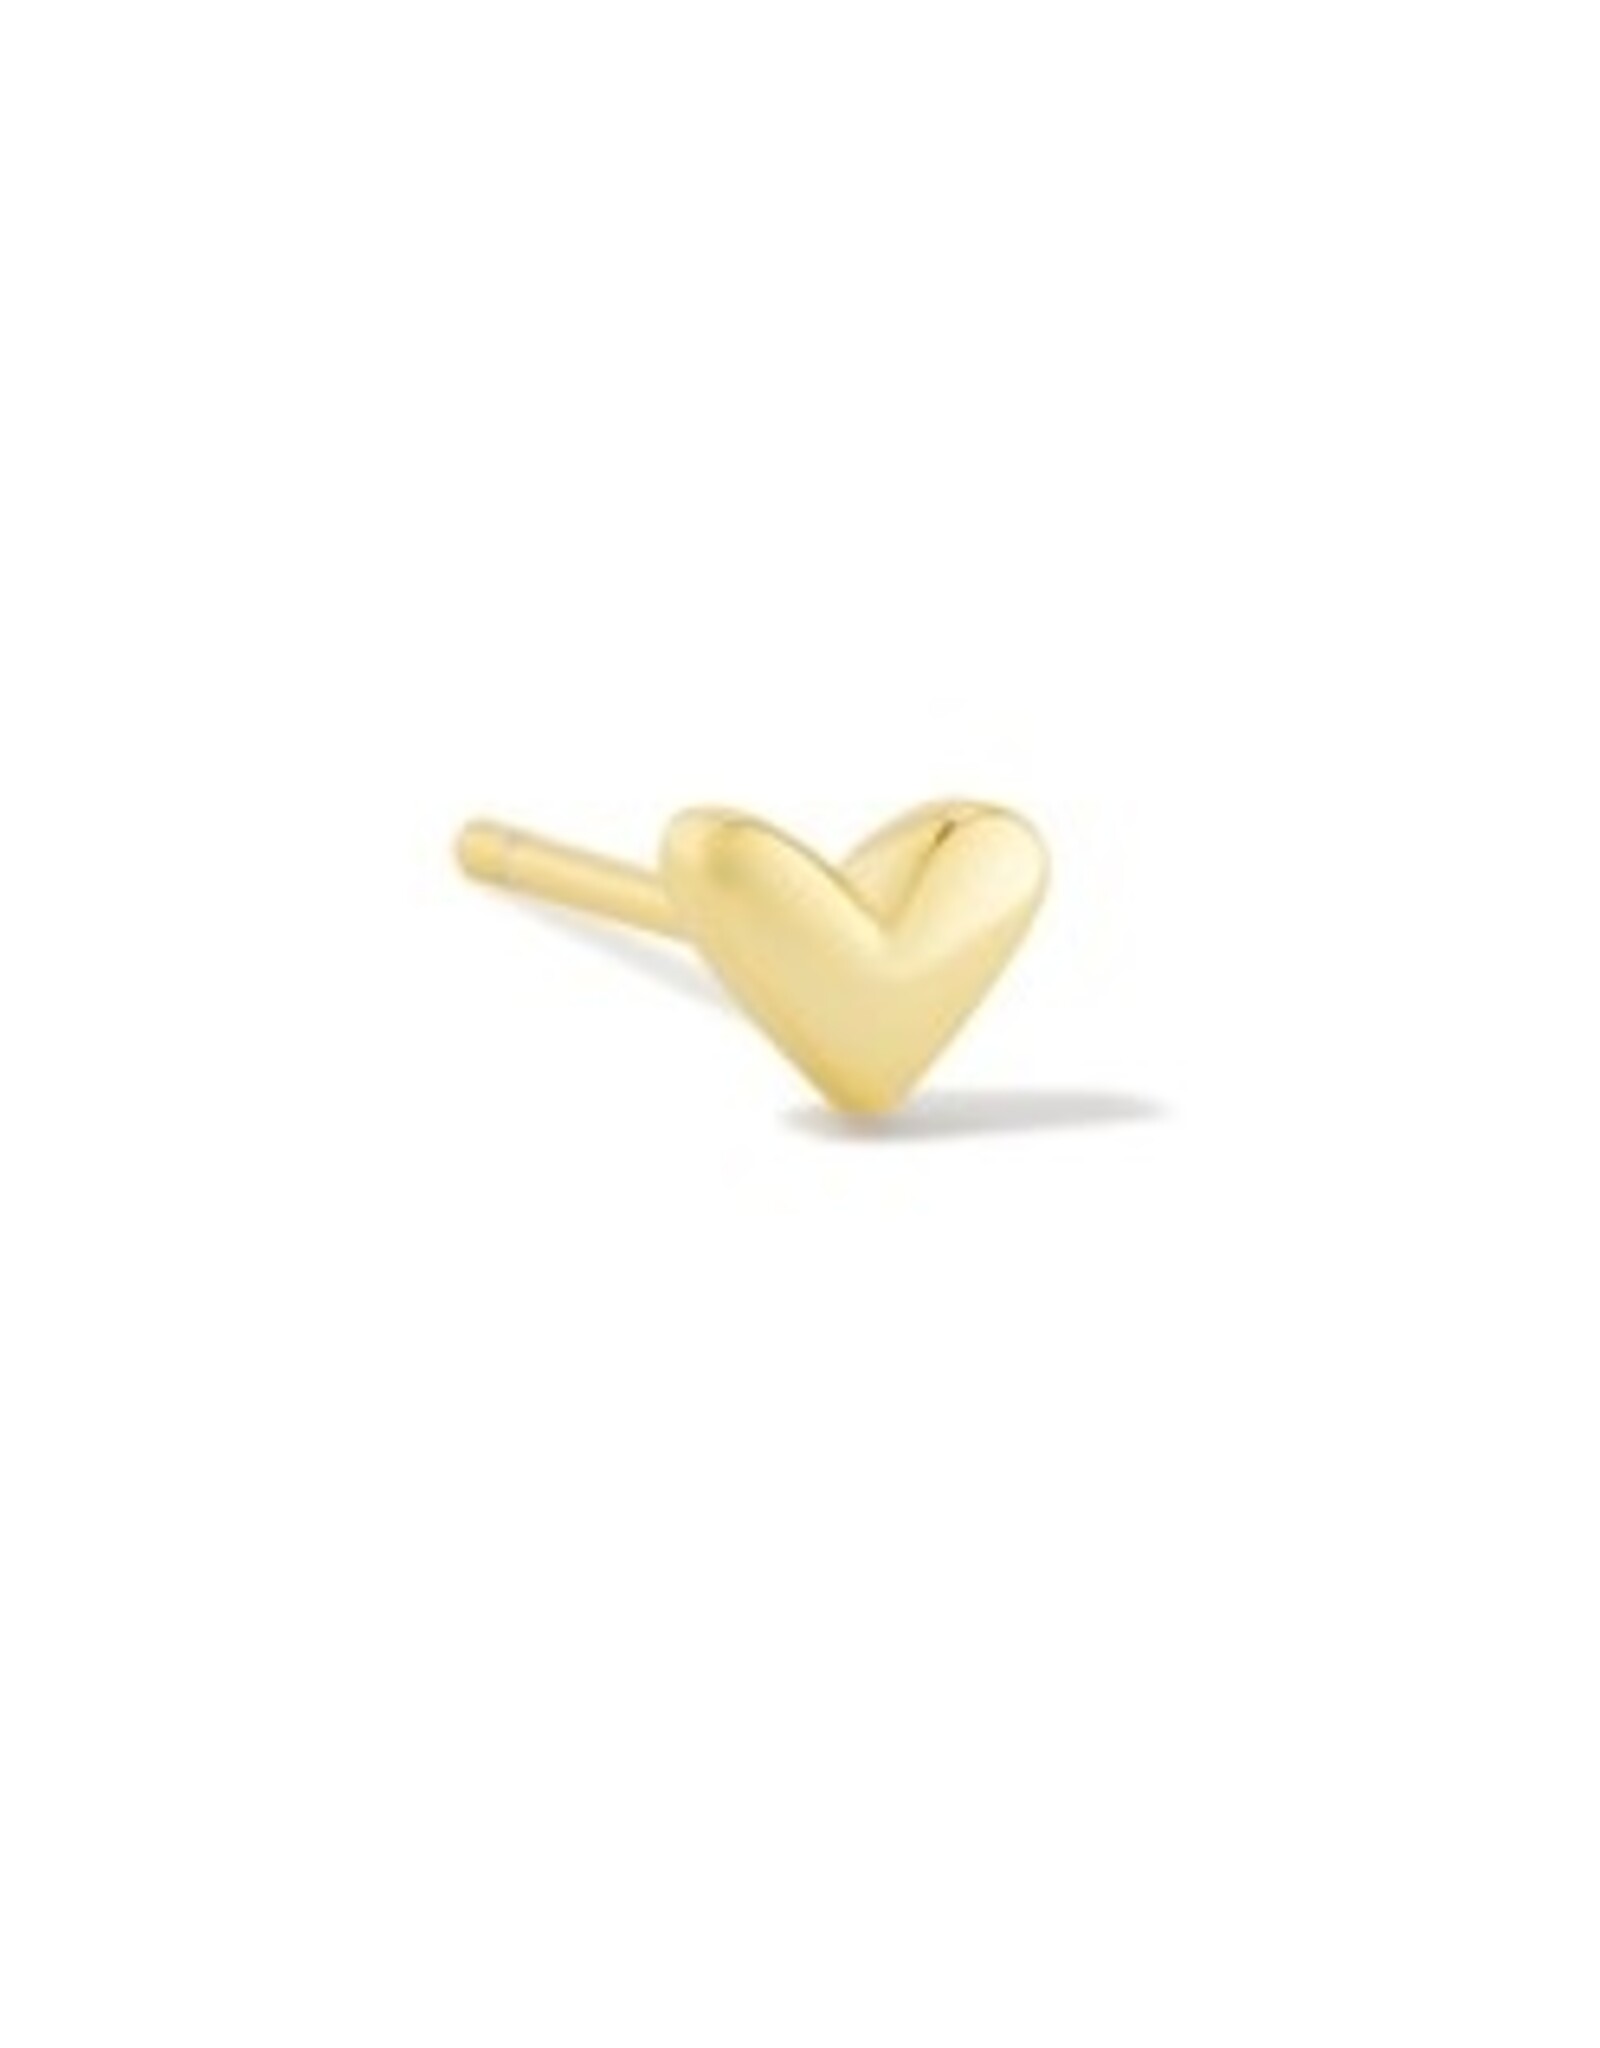 Kendra Scott Haven Heart Single Stud Earring Gold